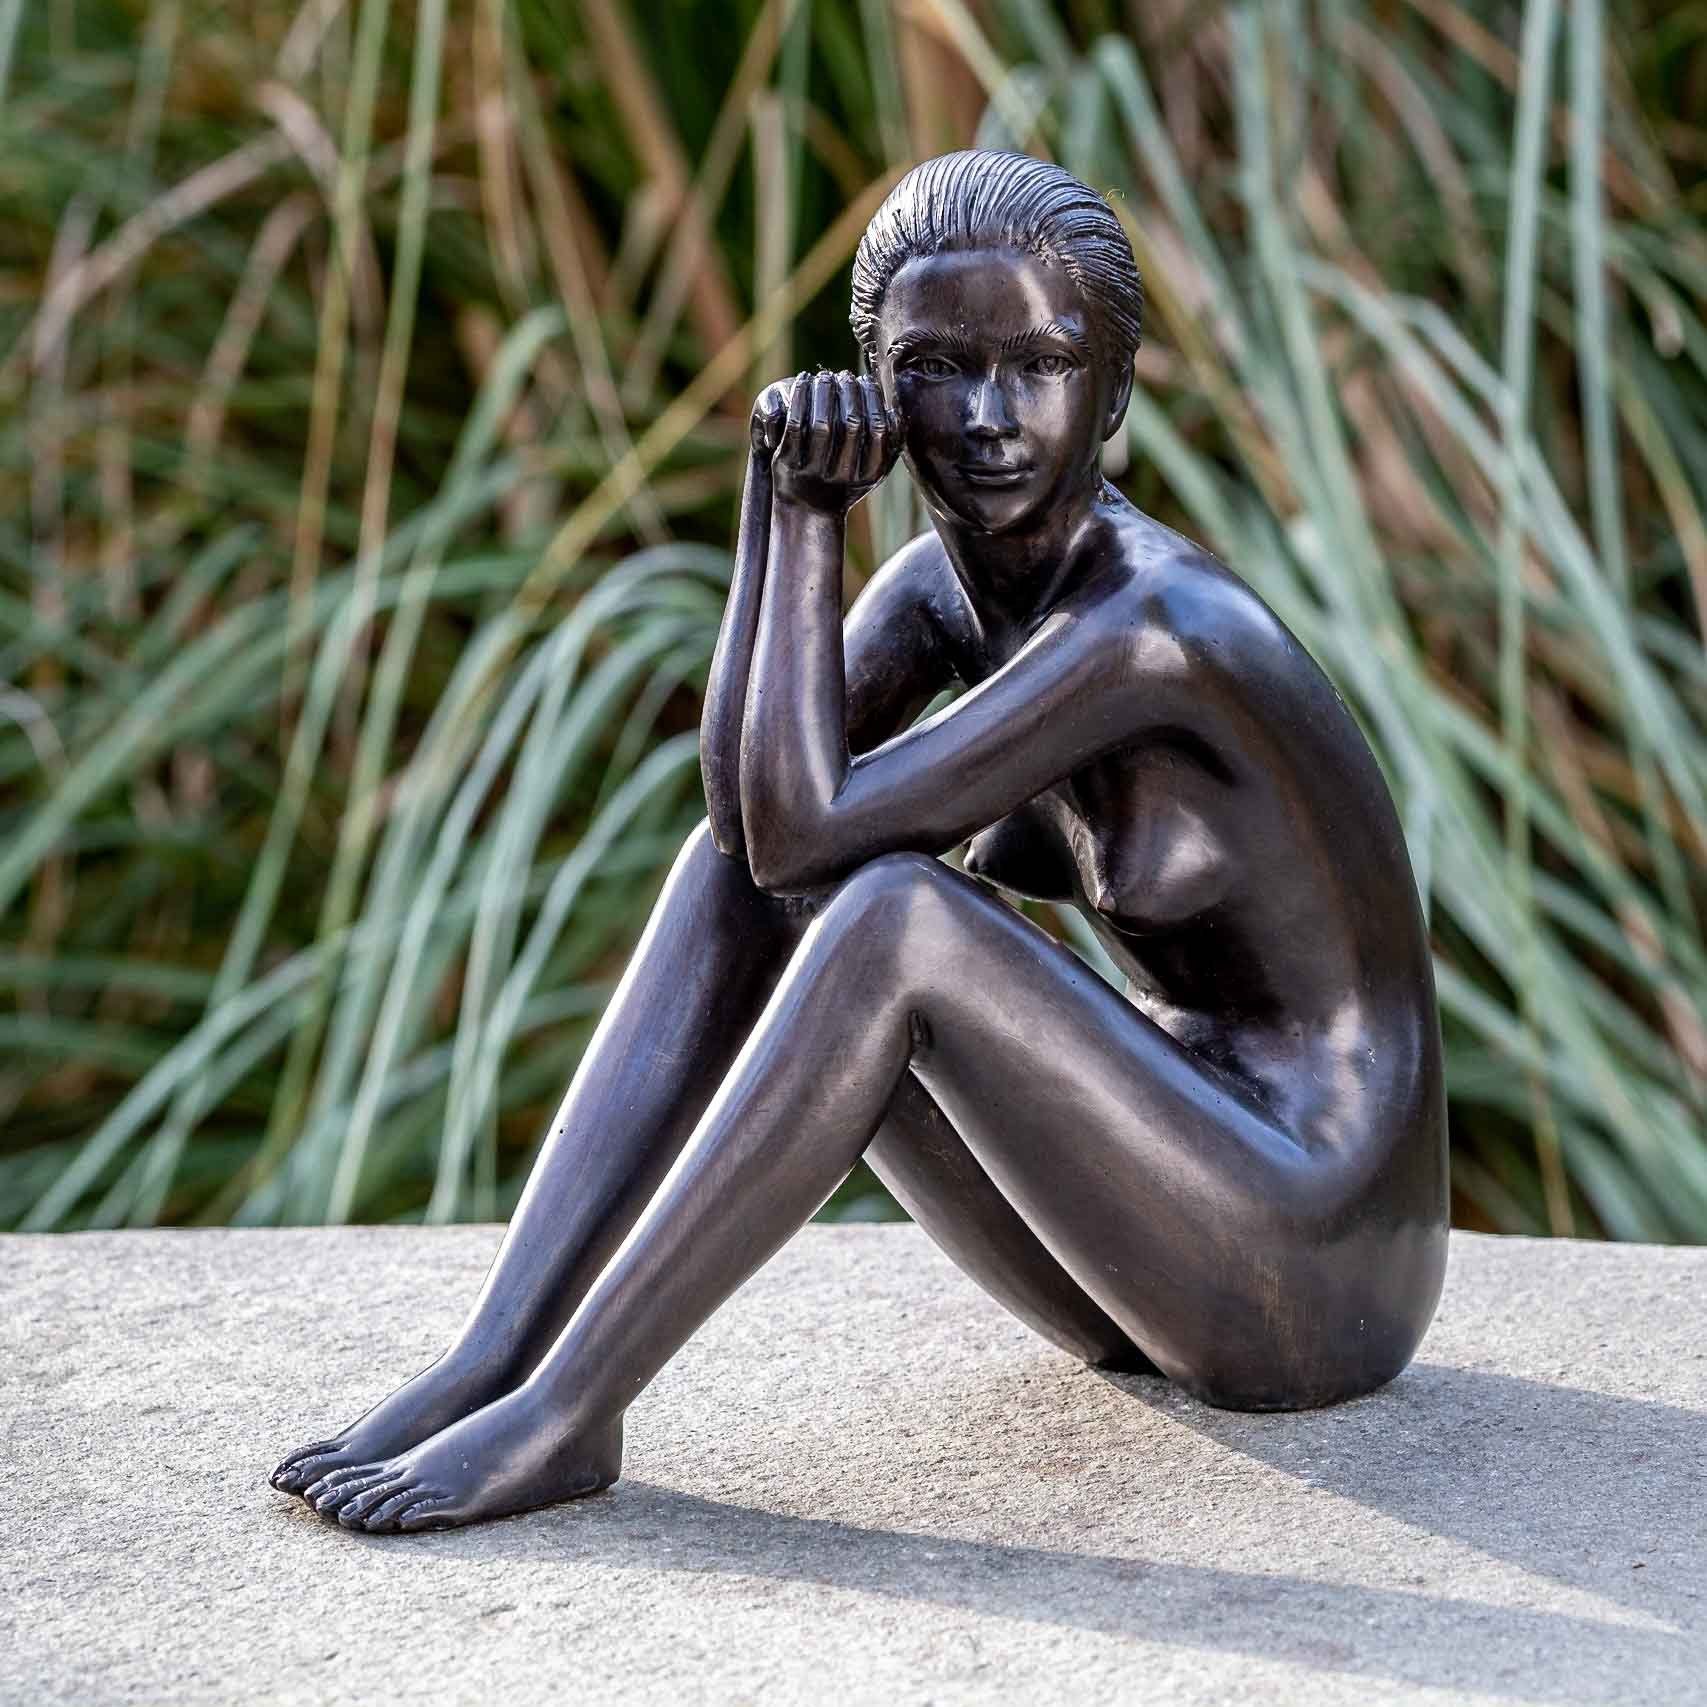 IDYL Gartenfigur IDYL Bronze-Skulptur Nackte Frau, Bronze – sehr robust – Langlebig – witterungsbeständig gegen Frost, Regen und UV-Strahlung. Die Modelle werden in Wachsausschmelzverfahren in Bronze gegossen und von Hand patiniert.